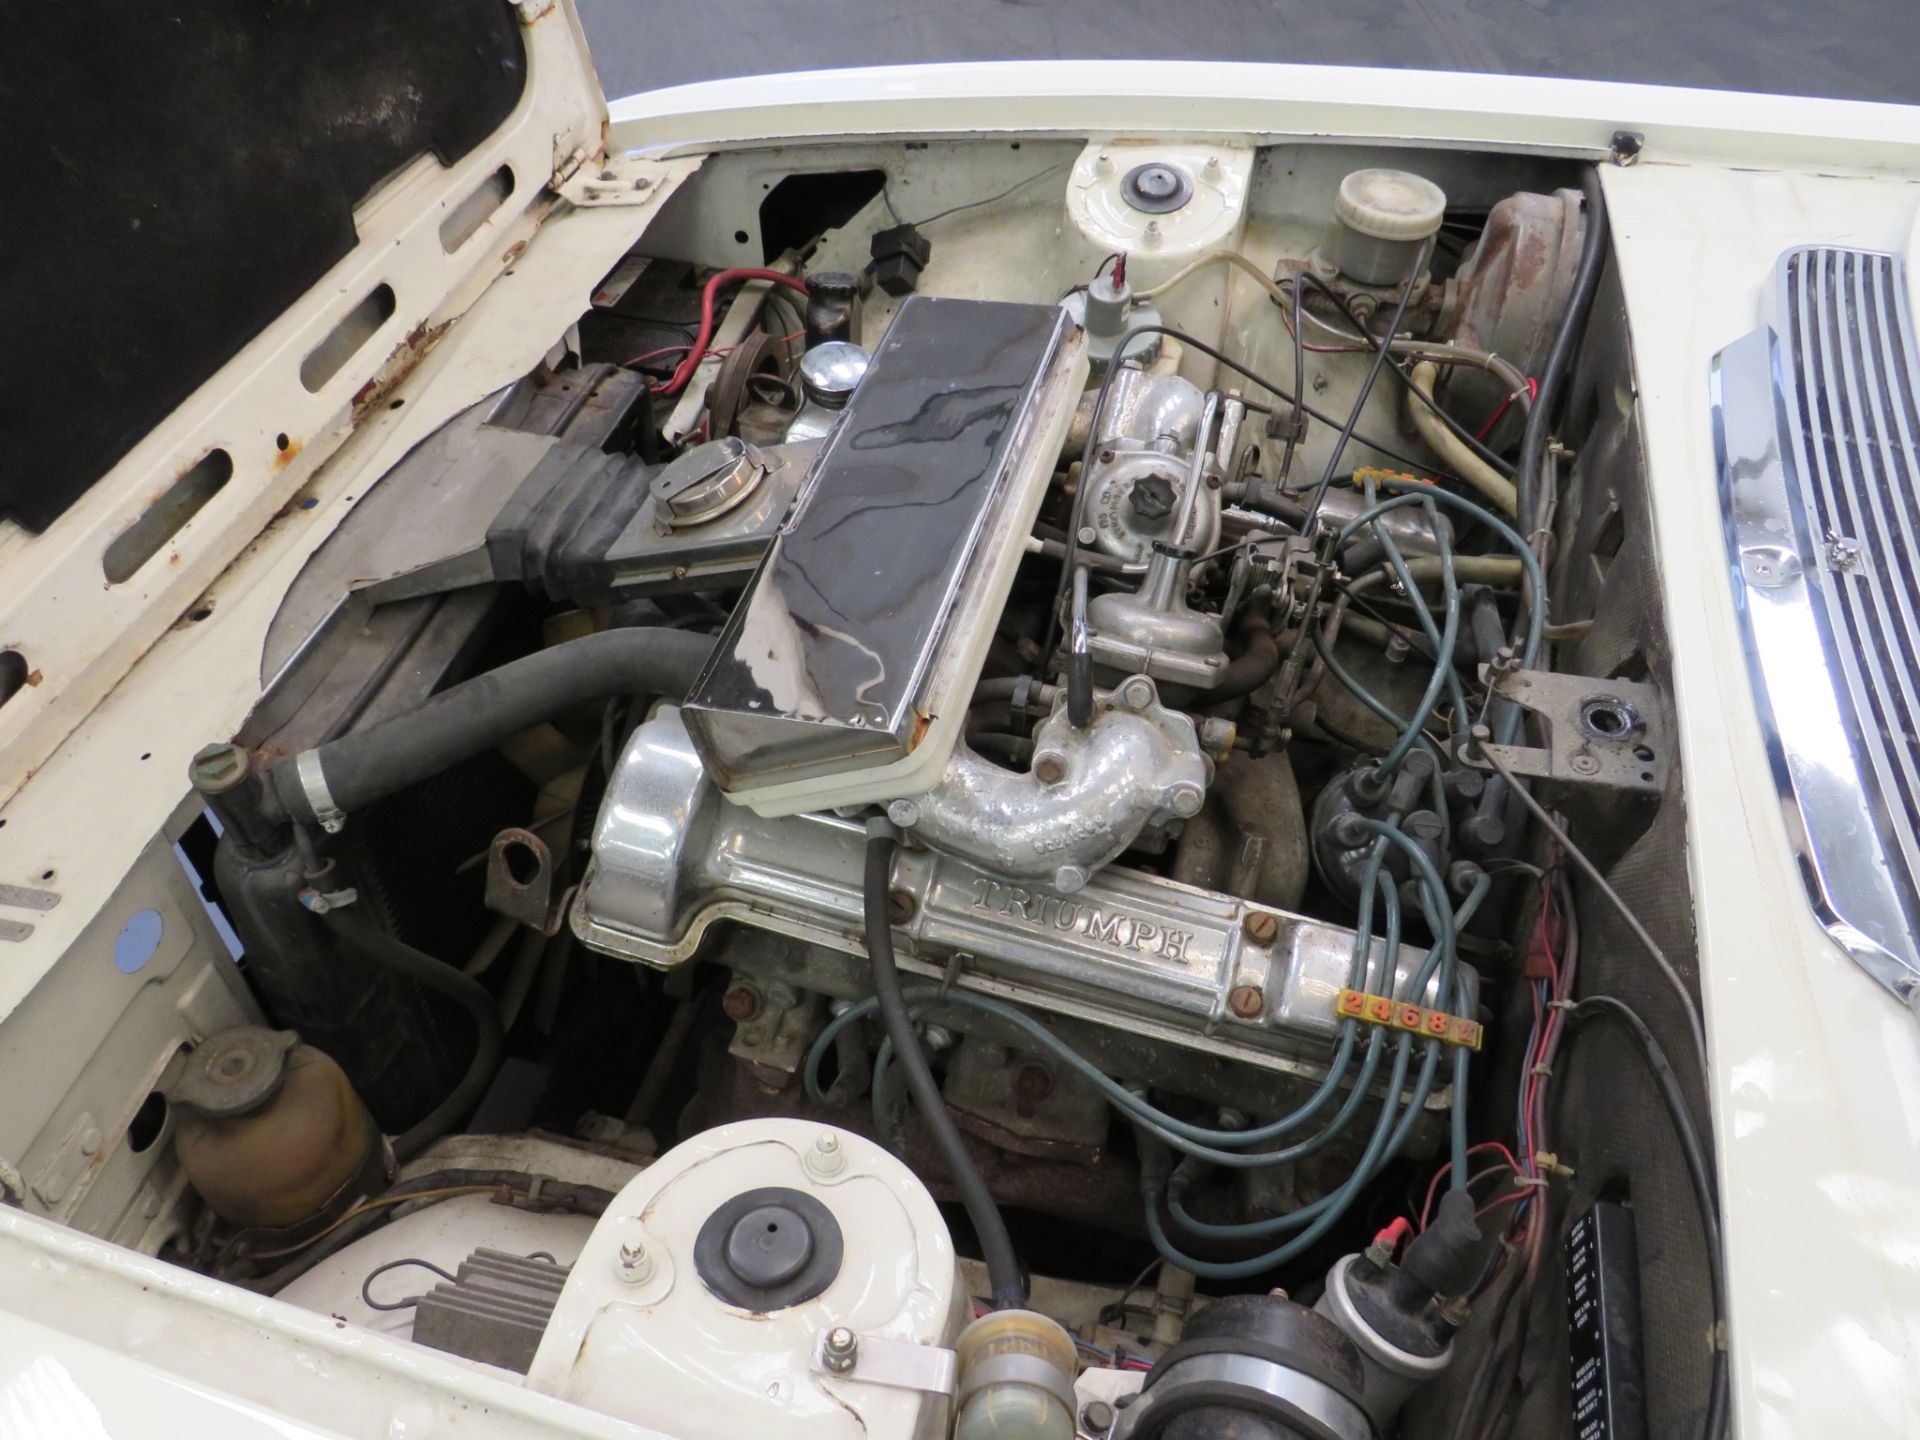 1974 Triumph Stag Auto - 2997cc - Image 17 of 19